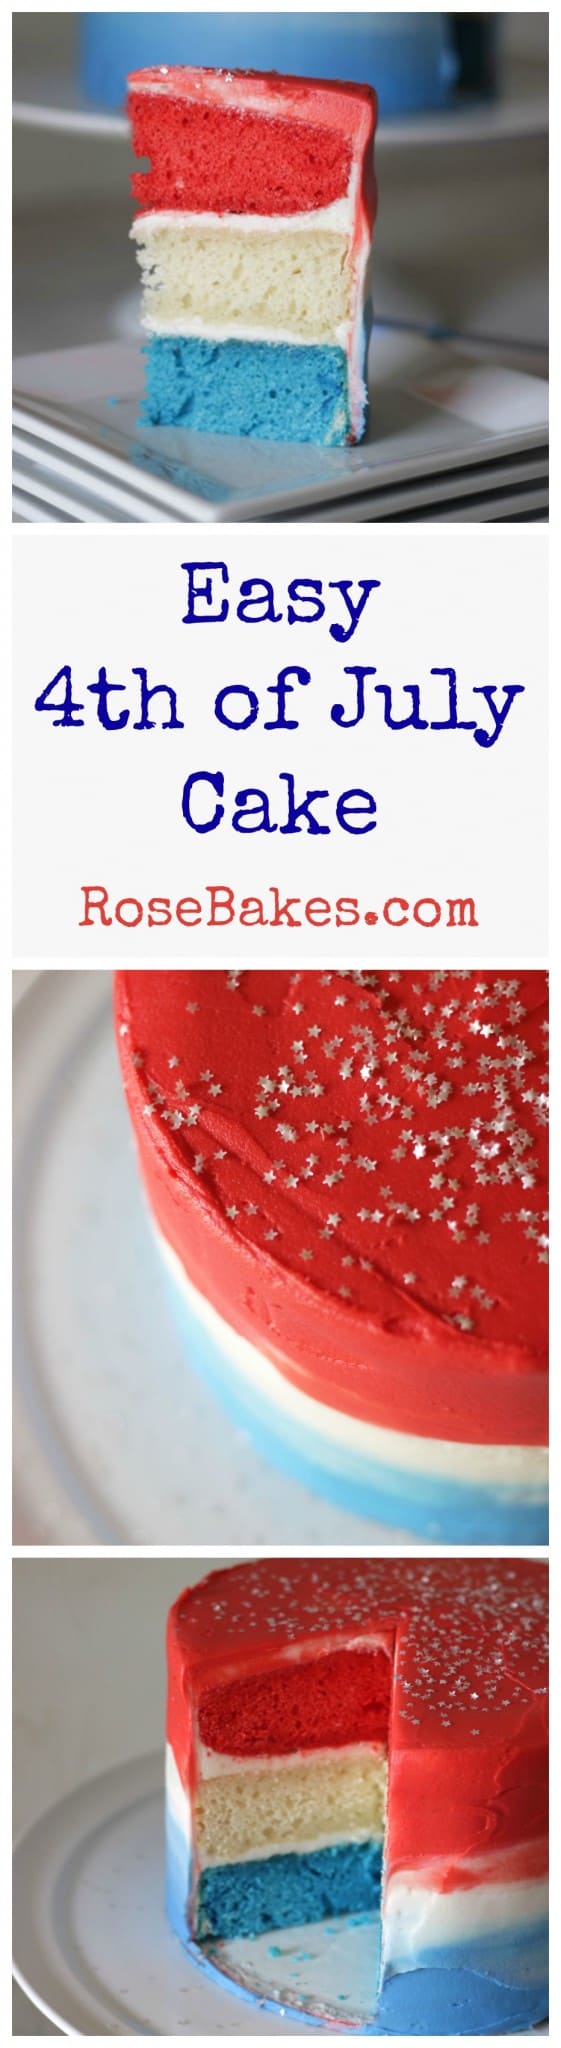 Easy 4th of July Cake RoseBakes.com